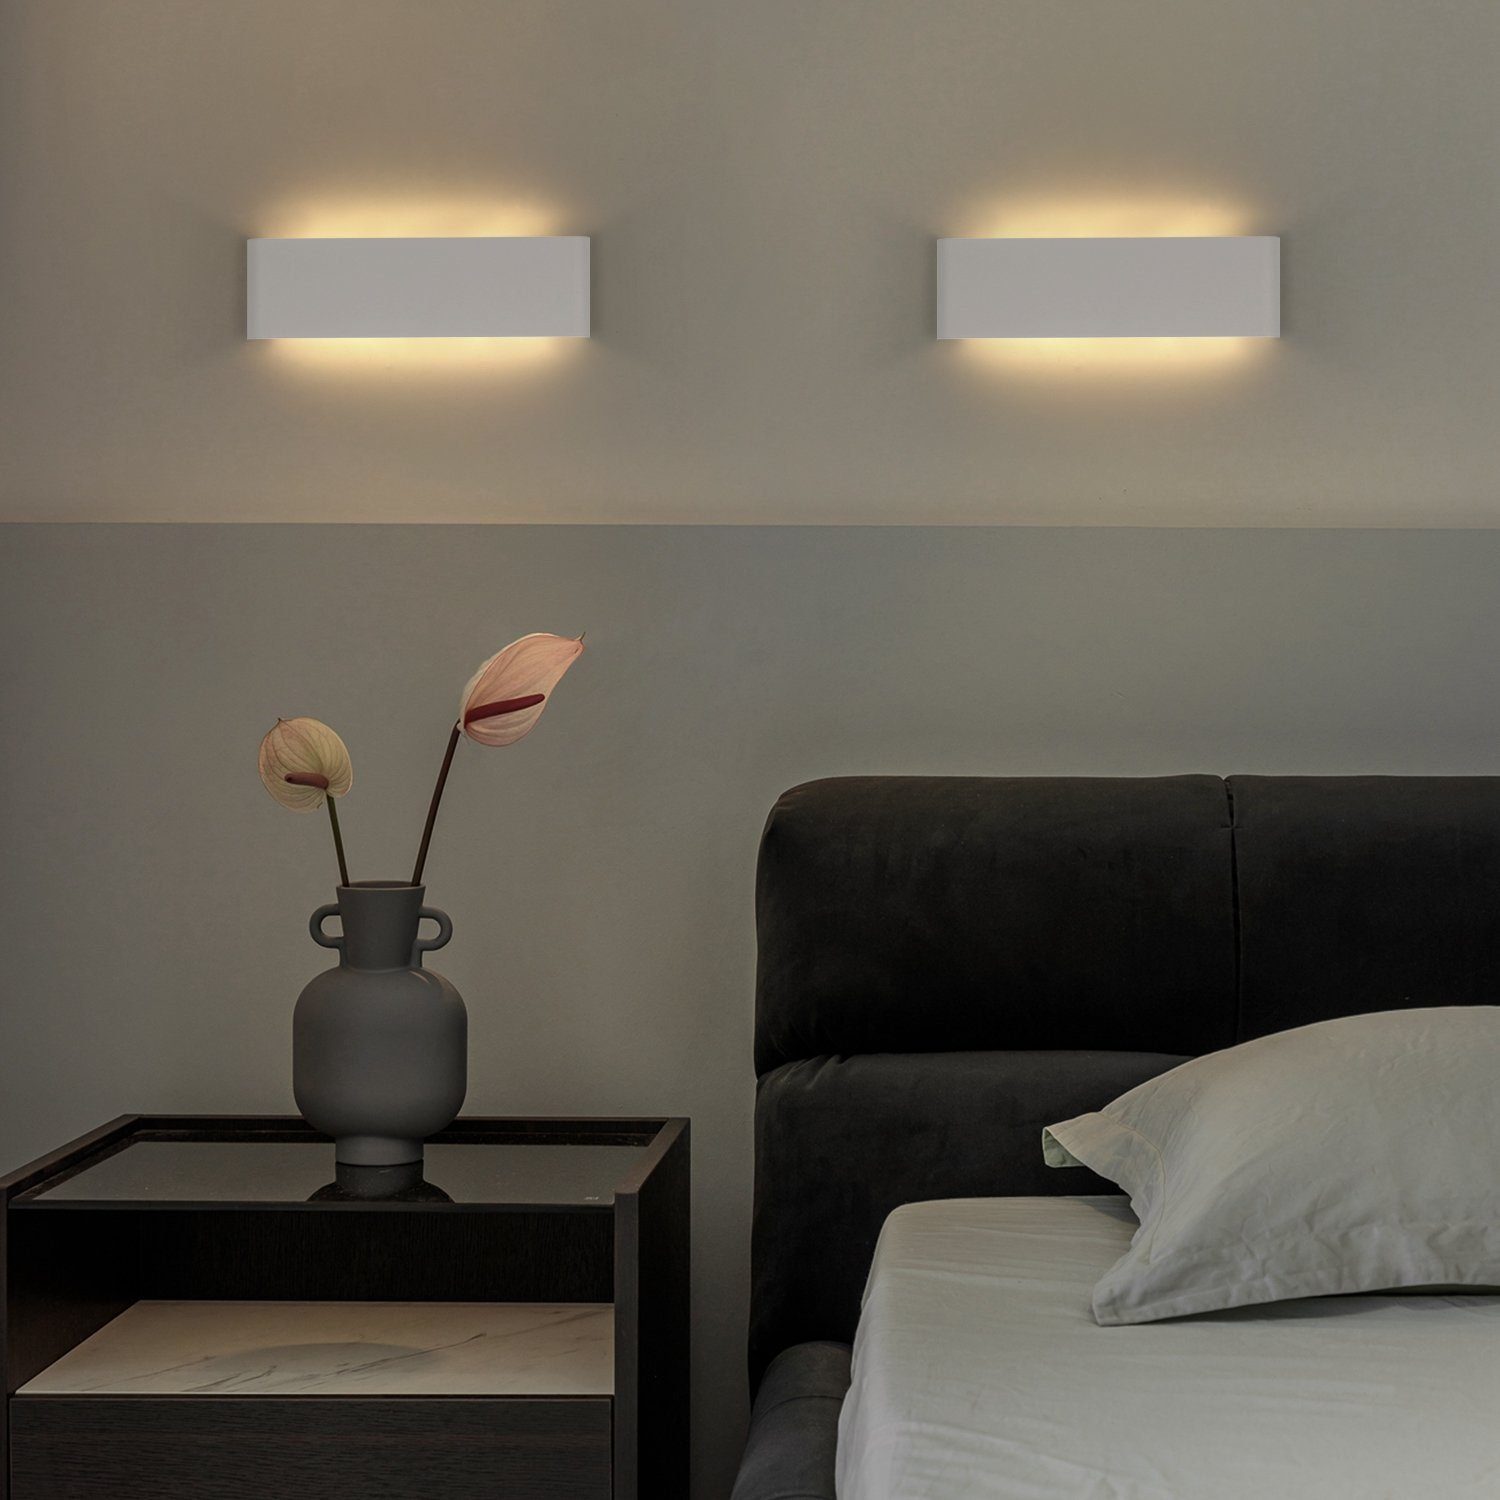 LED Wand Lampen Flur Leuchten Schlaf Wohn Bade Zimmer Beleuchtung Up & Down IP44 